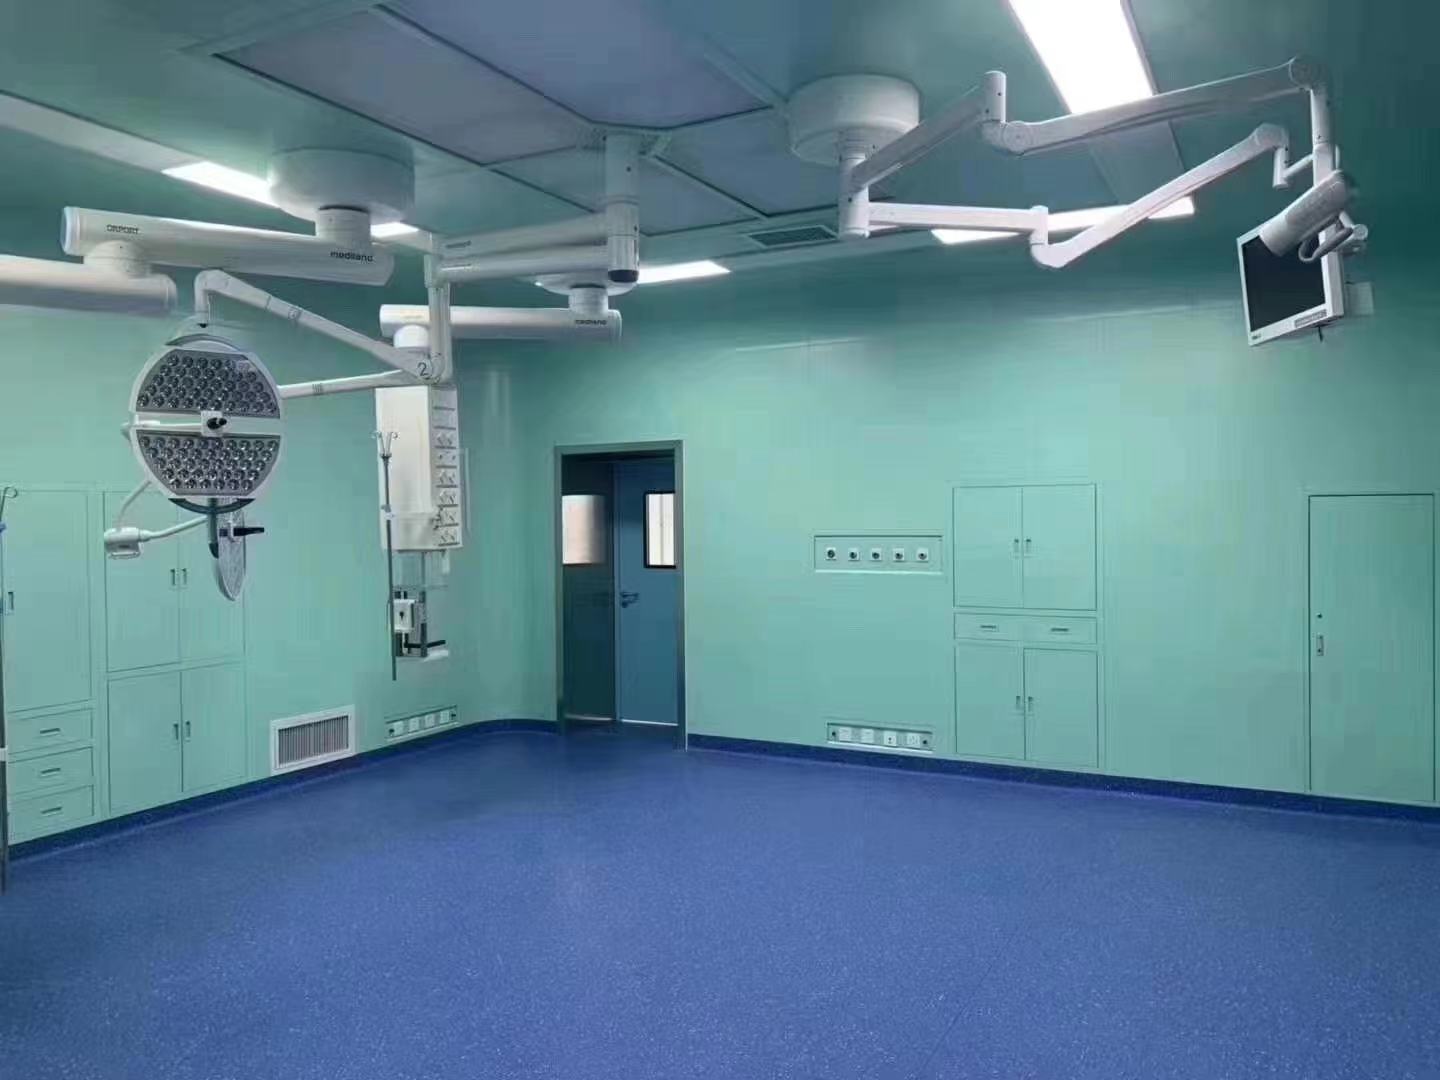 新乡海美手术室净化工程